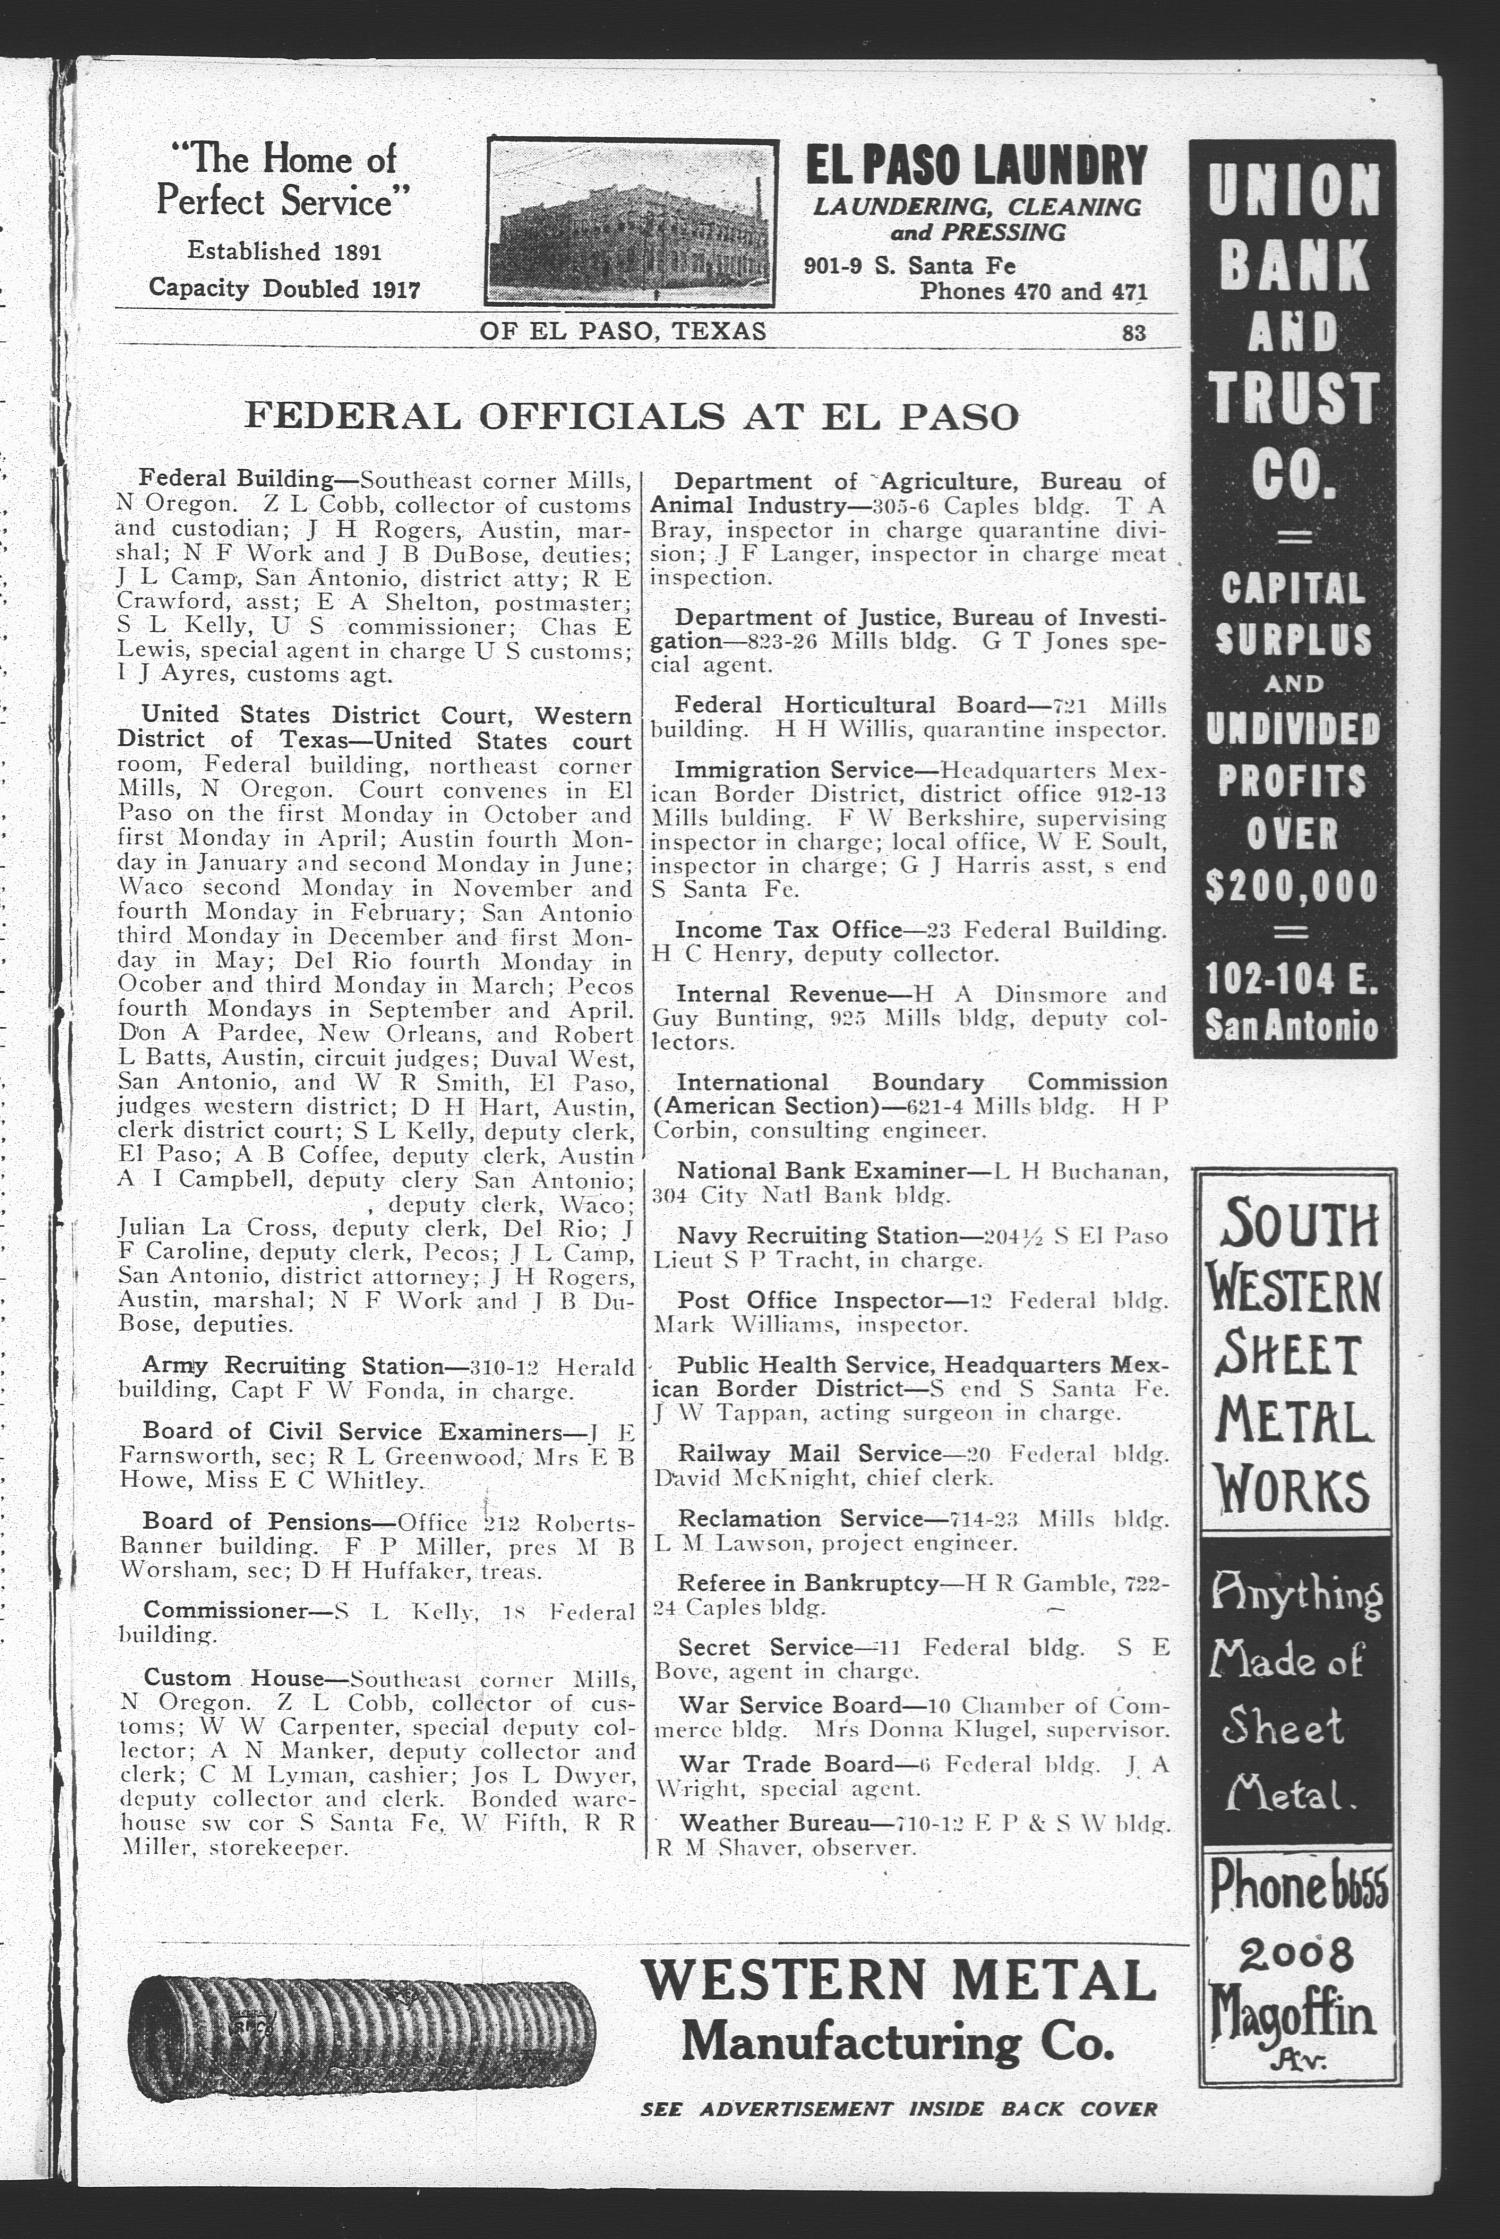 El Paso City Directory, 1918
                                                
                                                    83
                                                